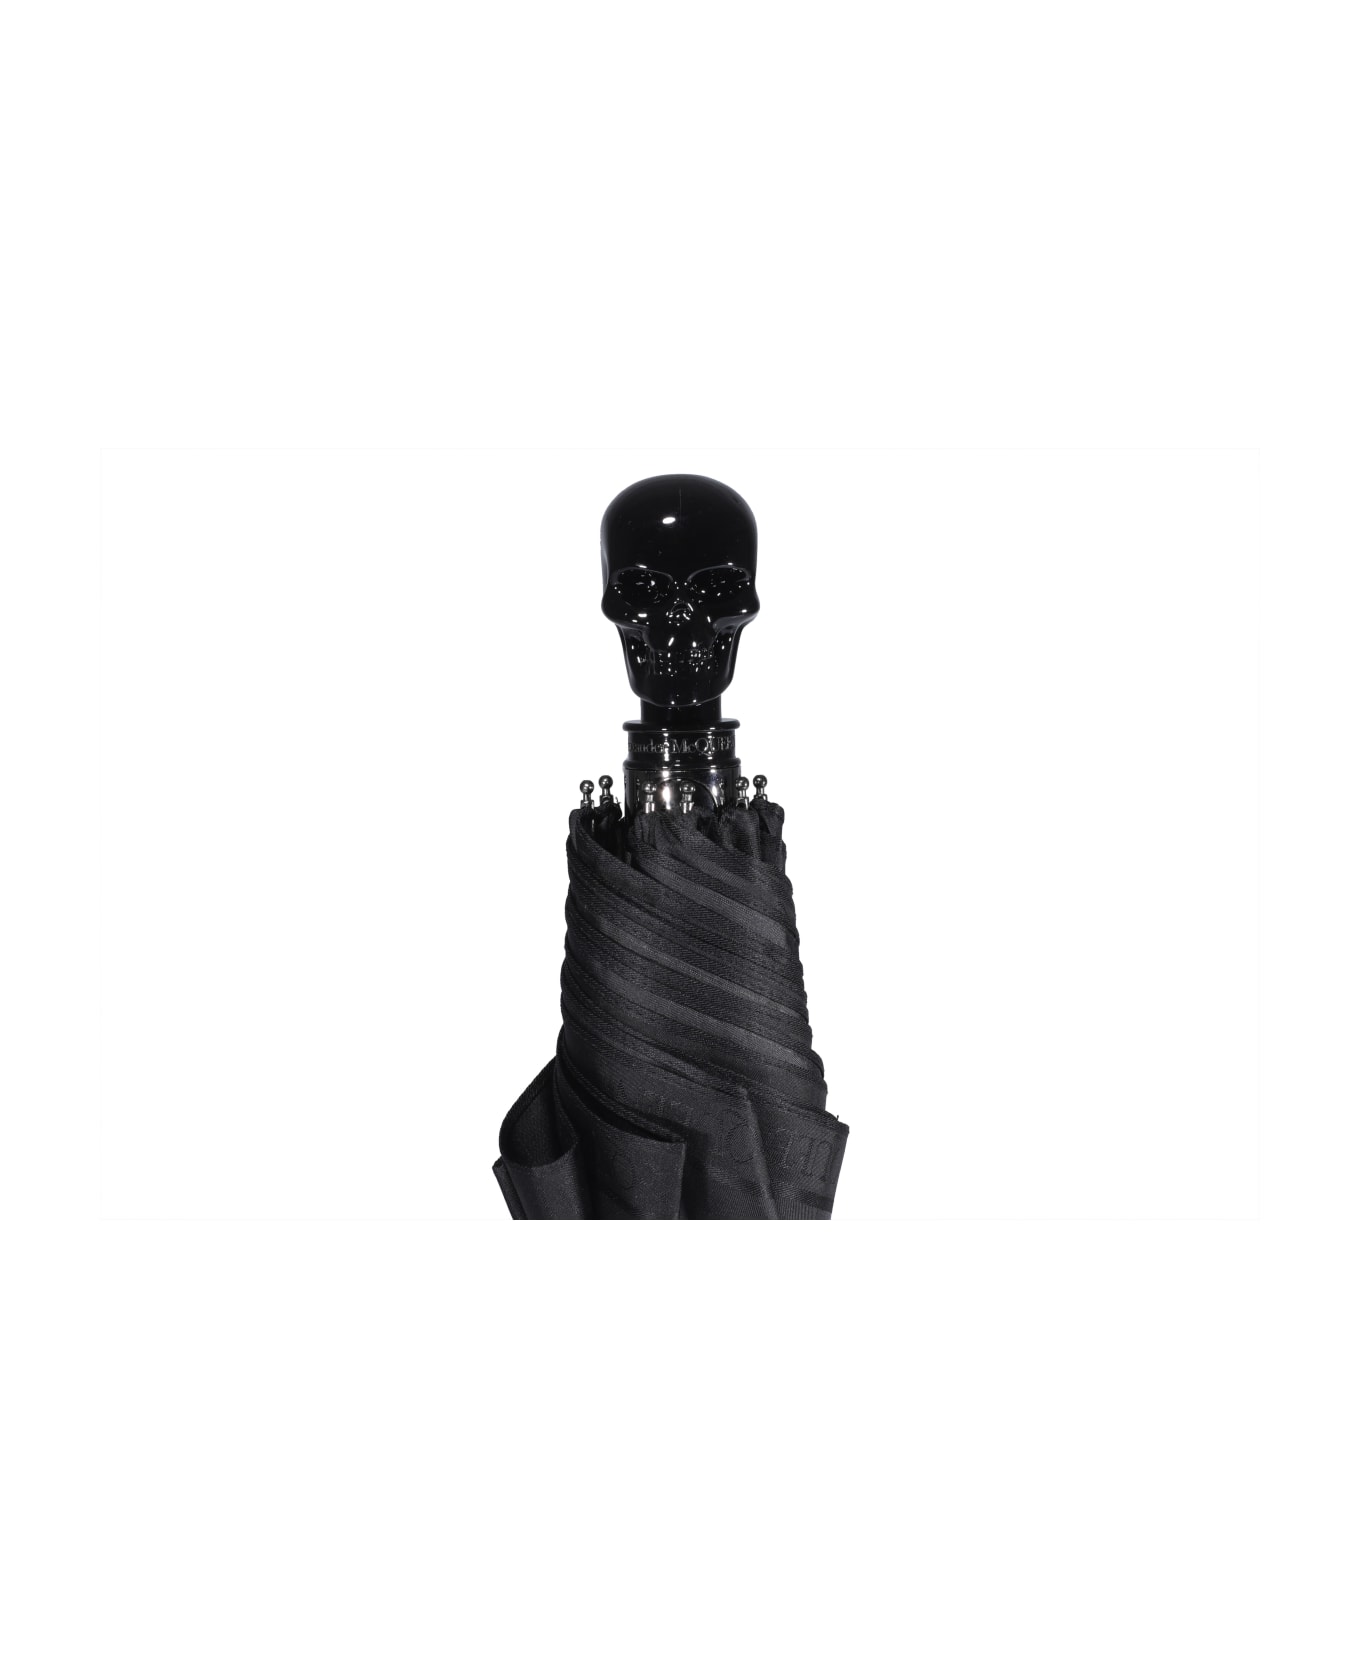 Alexander McQueen Skull Umbrella - Black